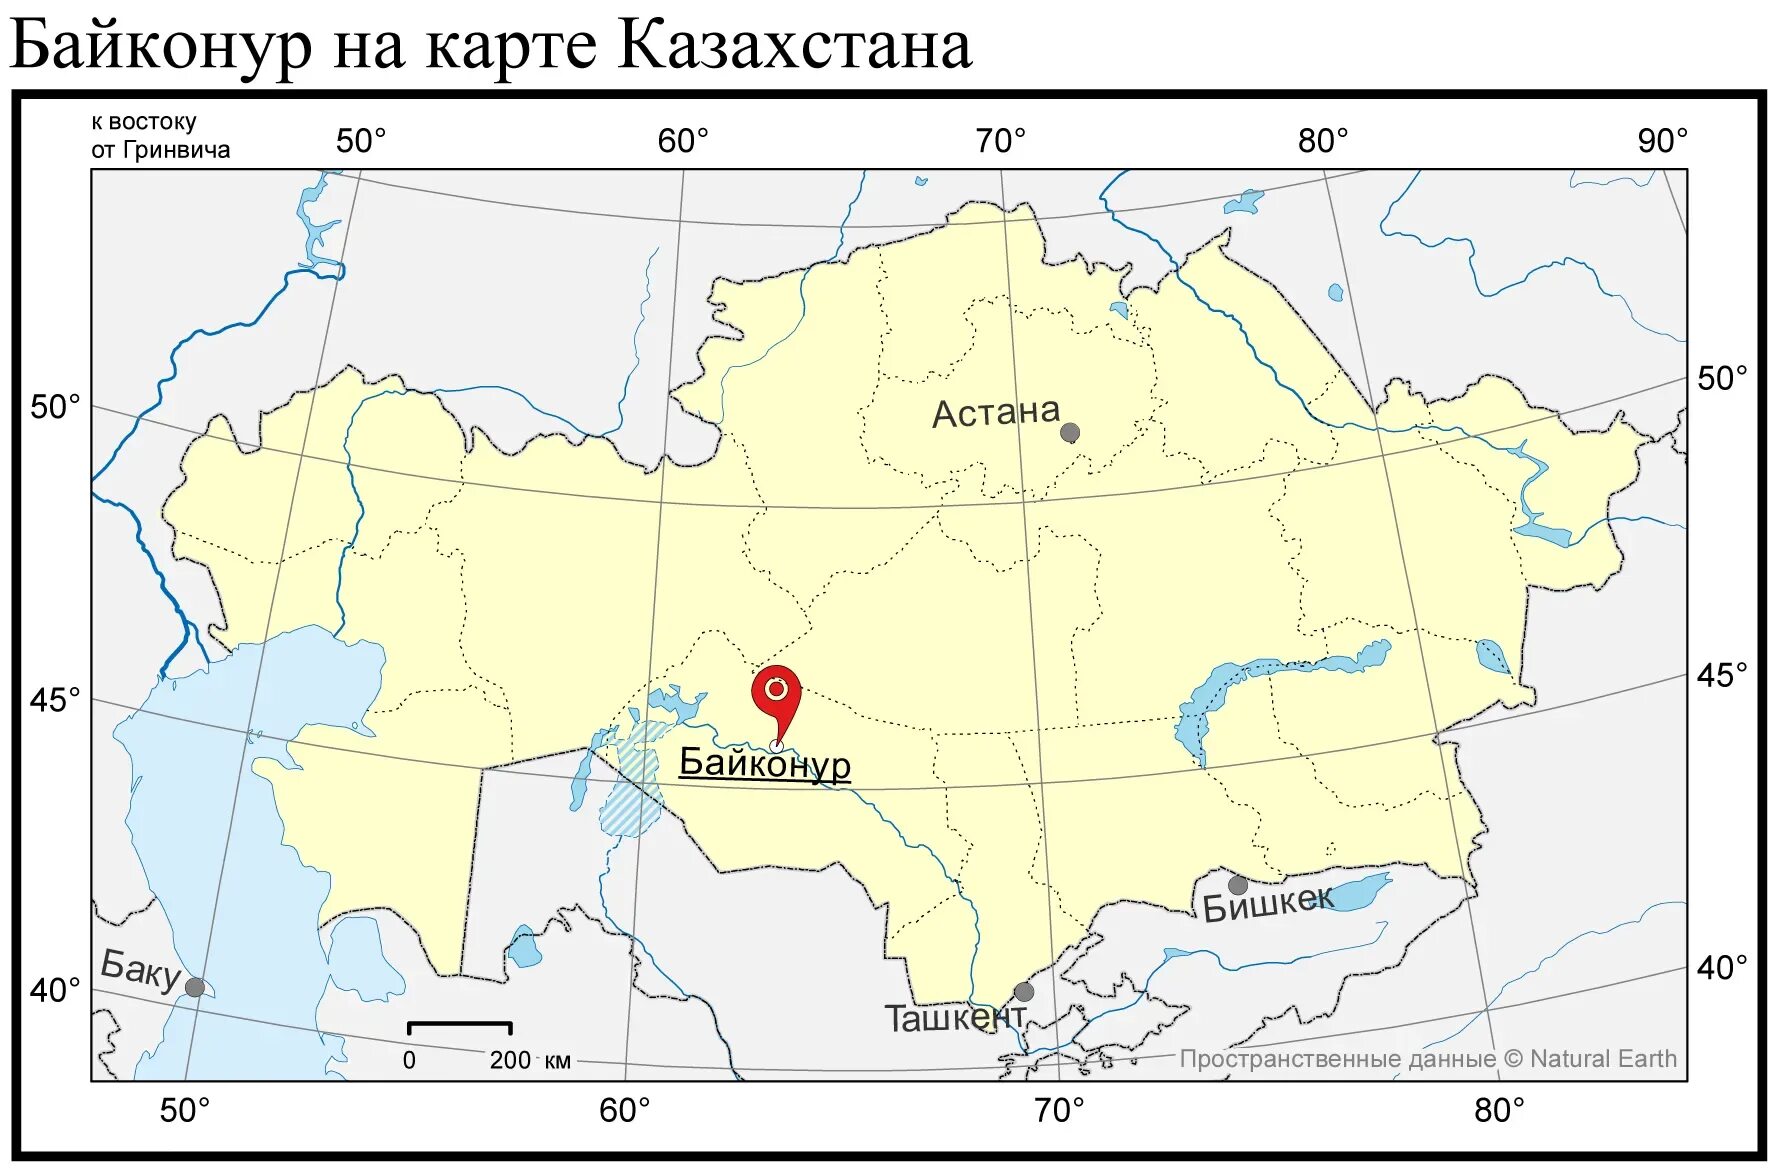 Алма-Ата на карте Казахстана. Актобе Казахстан на карте. Байконур на карте Казахстана. Тараз Казахстан на карте. Актюбинский казахстан карта